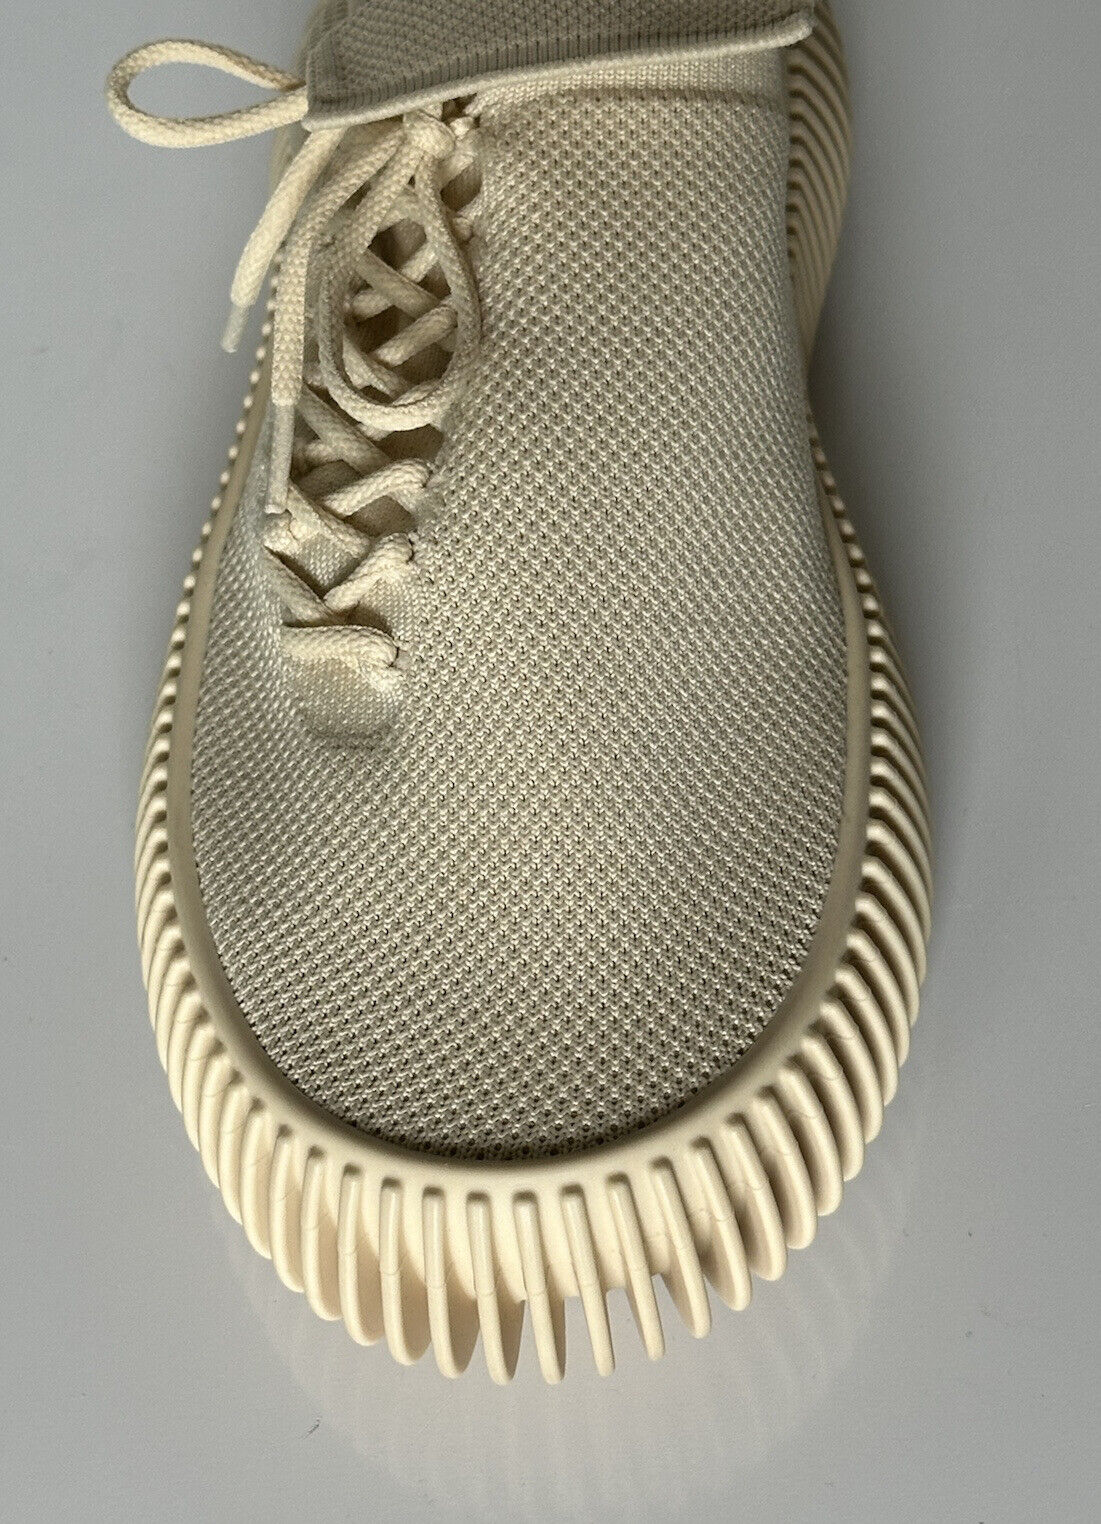 NIB 920 $ Bottega Veneta Tech Knit Cane Sugar Sneakers für Herren 8 US (41 Eu) 690112 